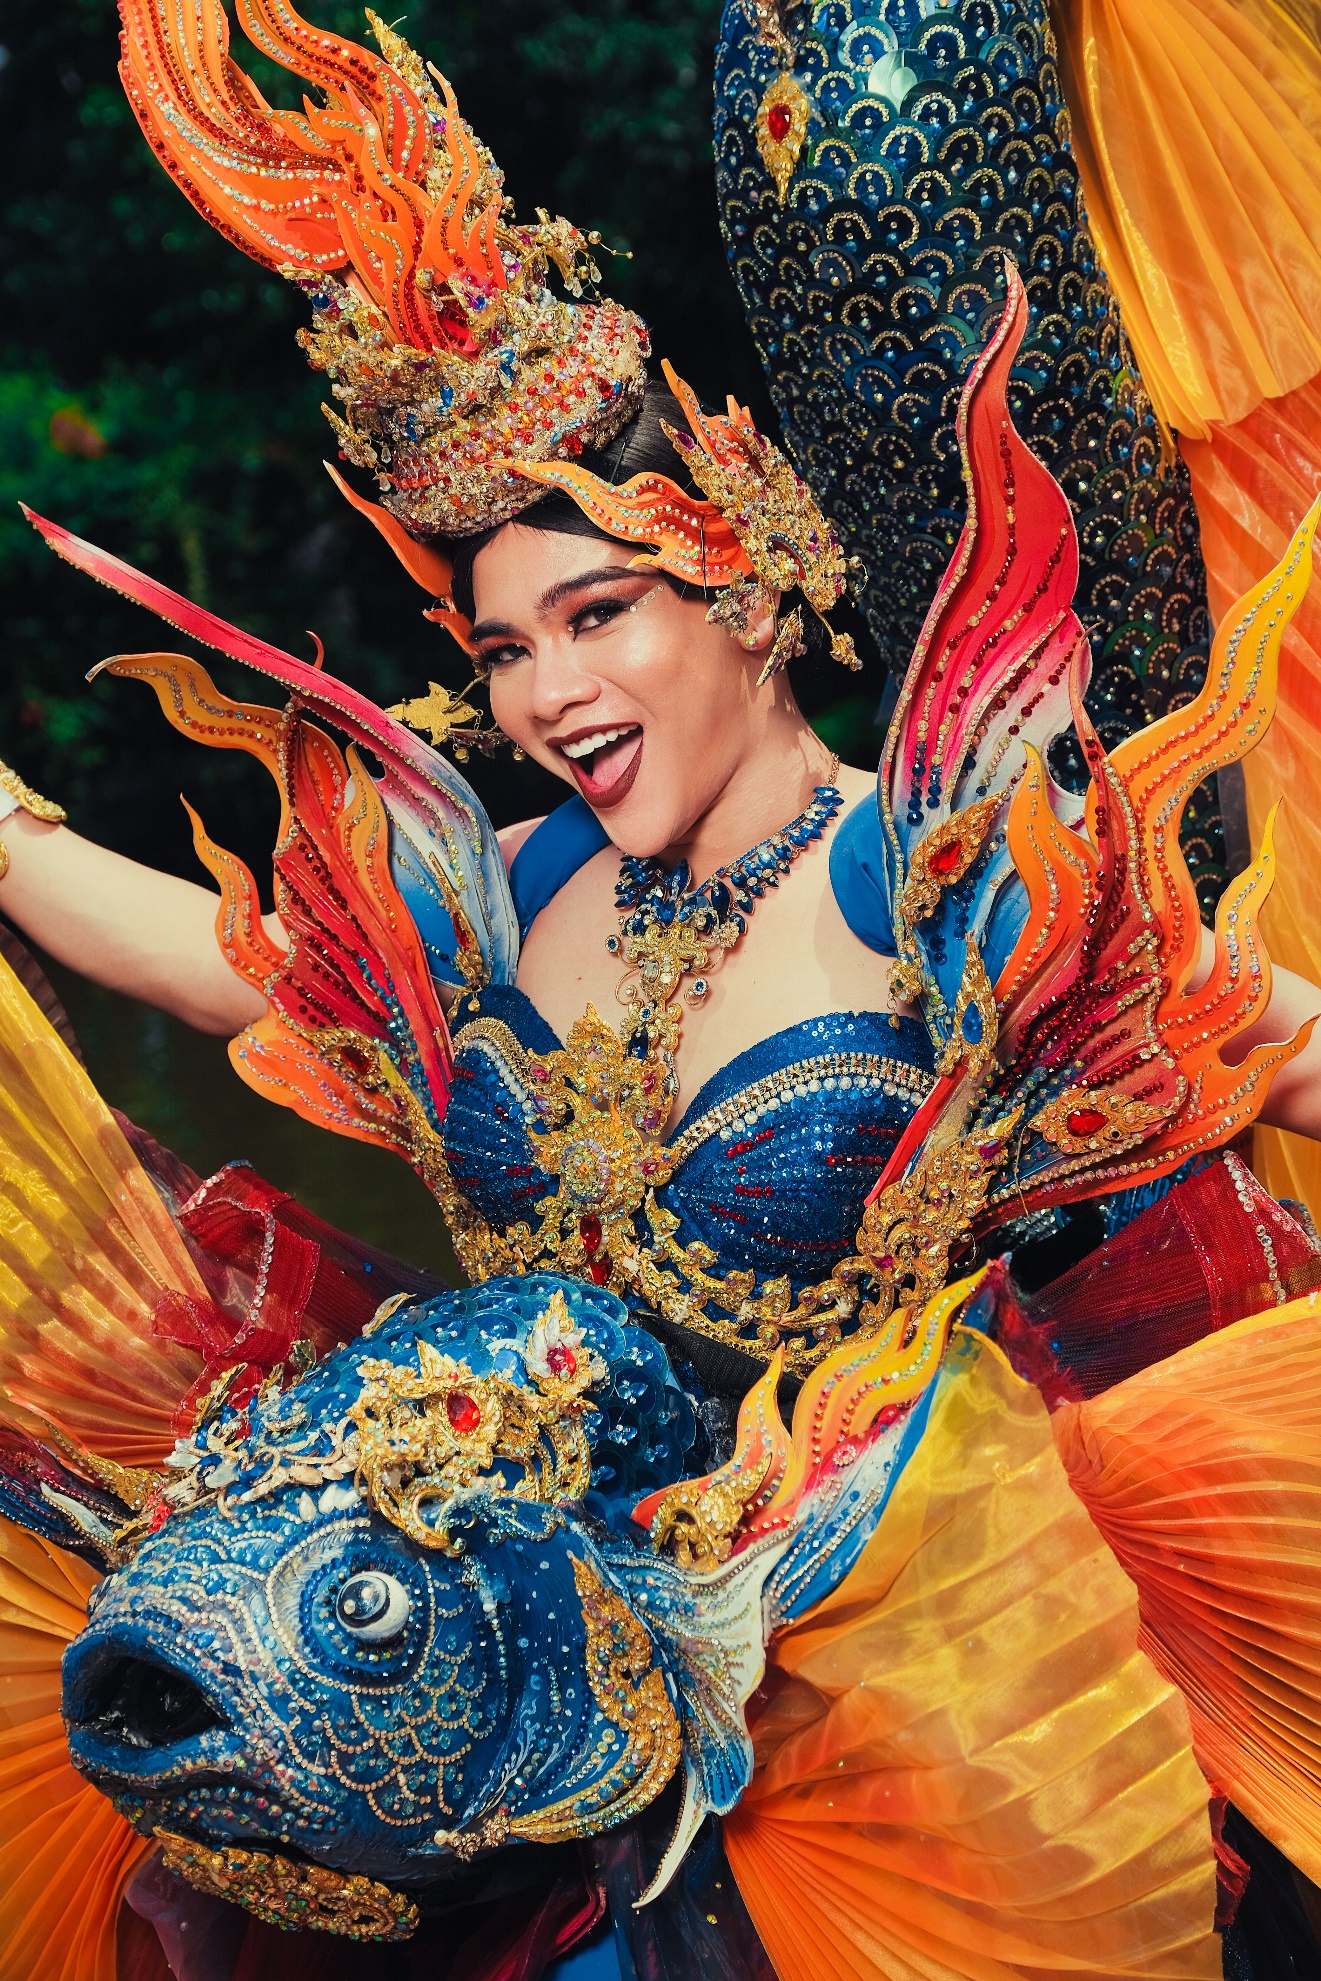 CEO Hương Nam Production House gây sốt cộng đồng mạng với bộ ảnh “National costume” Thái Lan - ảnh 9